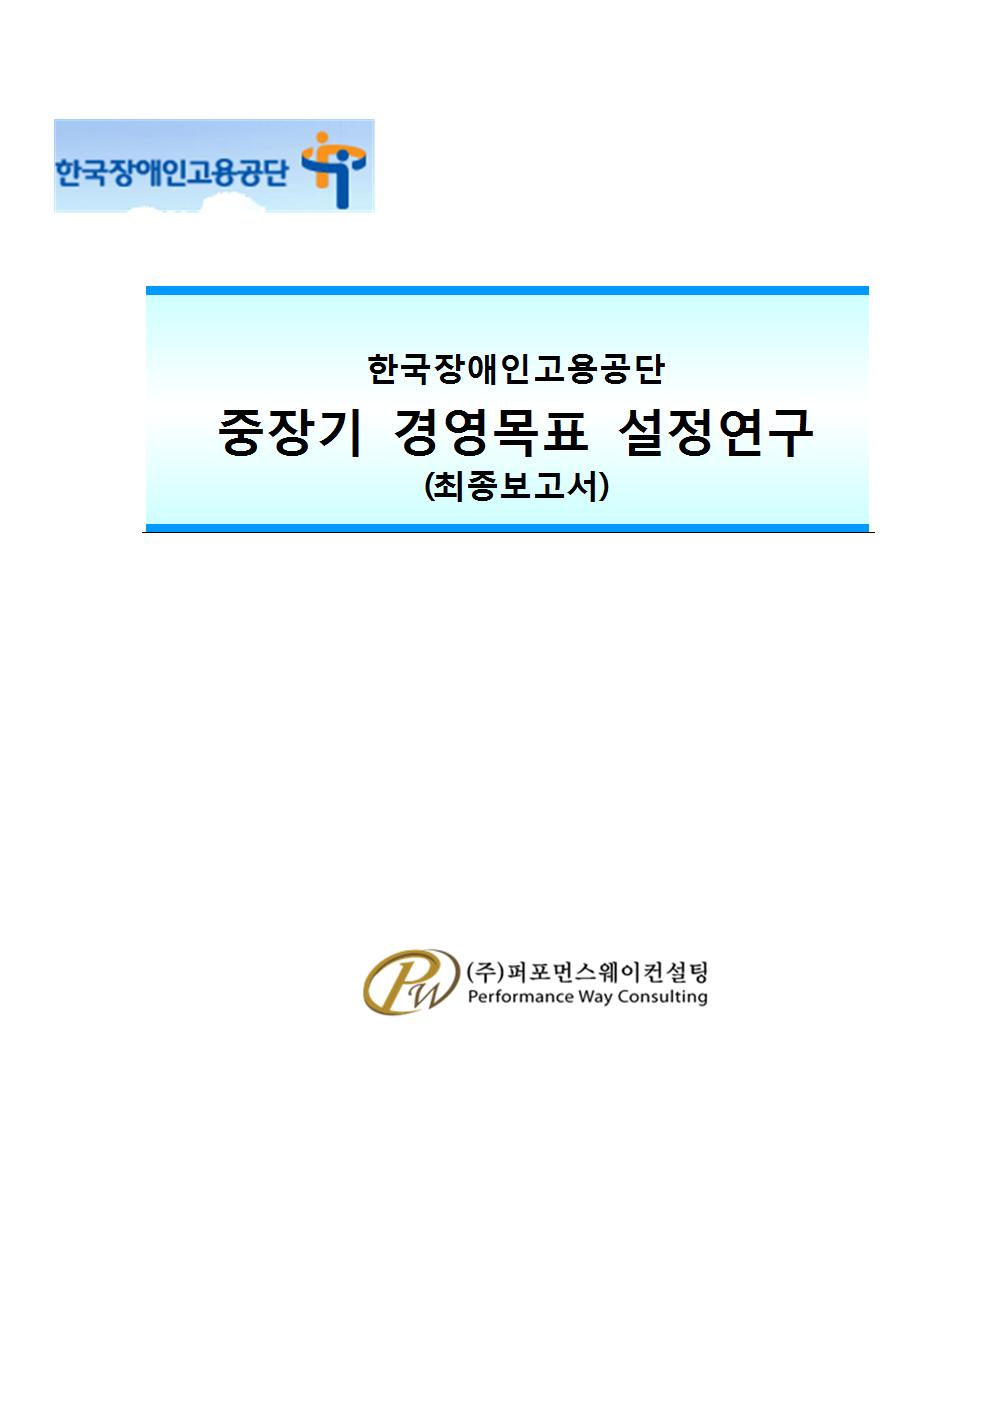 한국장애인고용공단 중장기 경영목표 설정